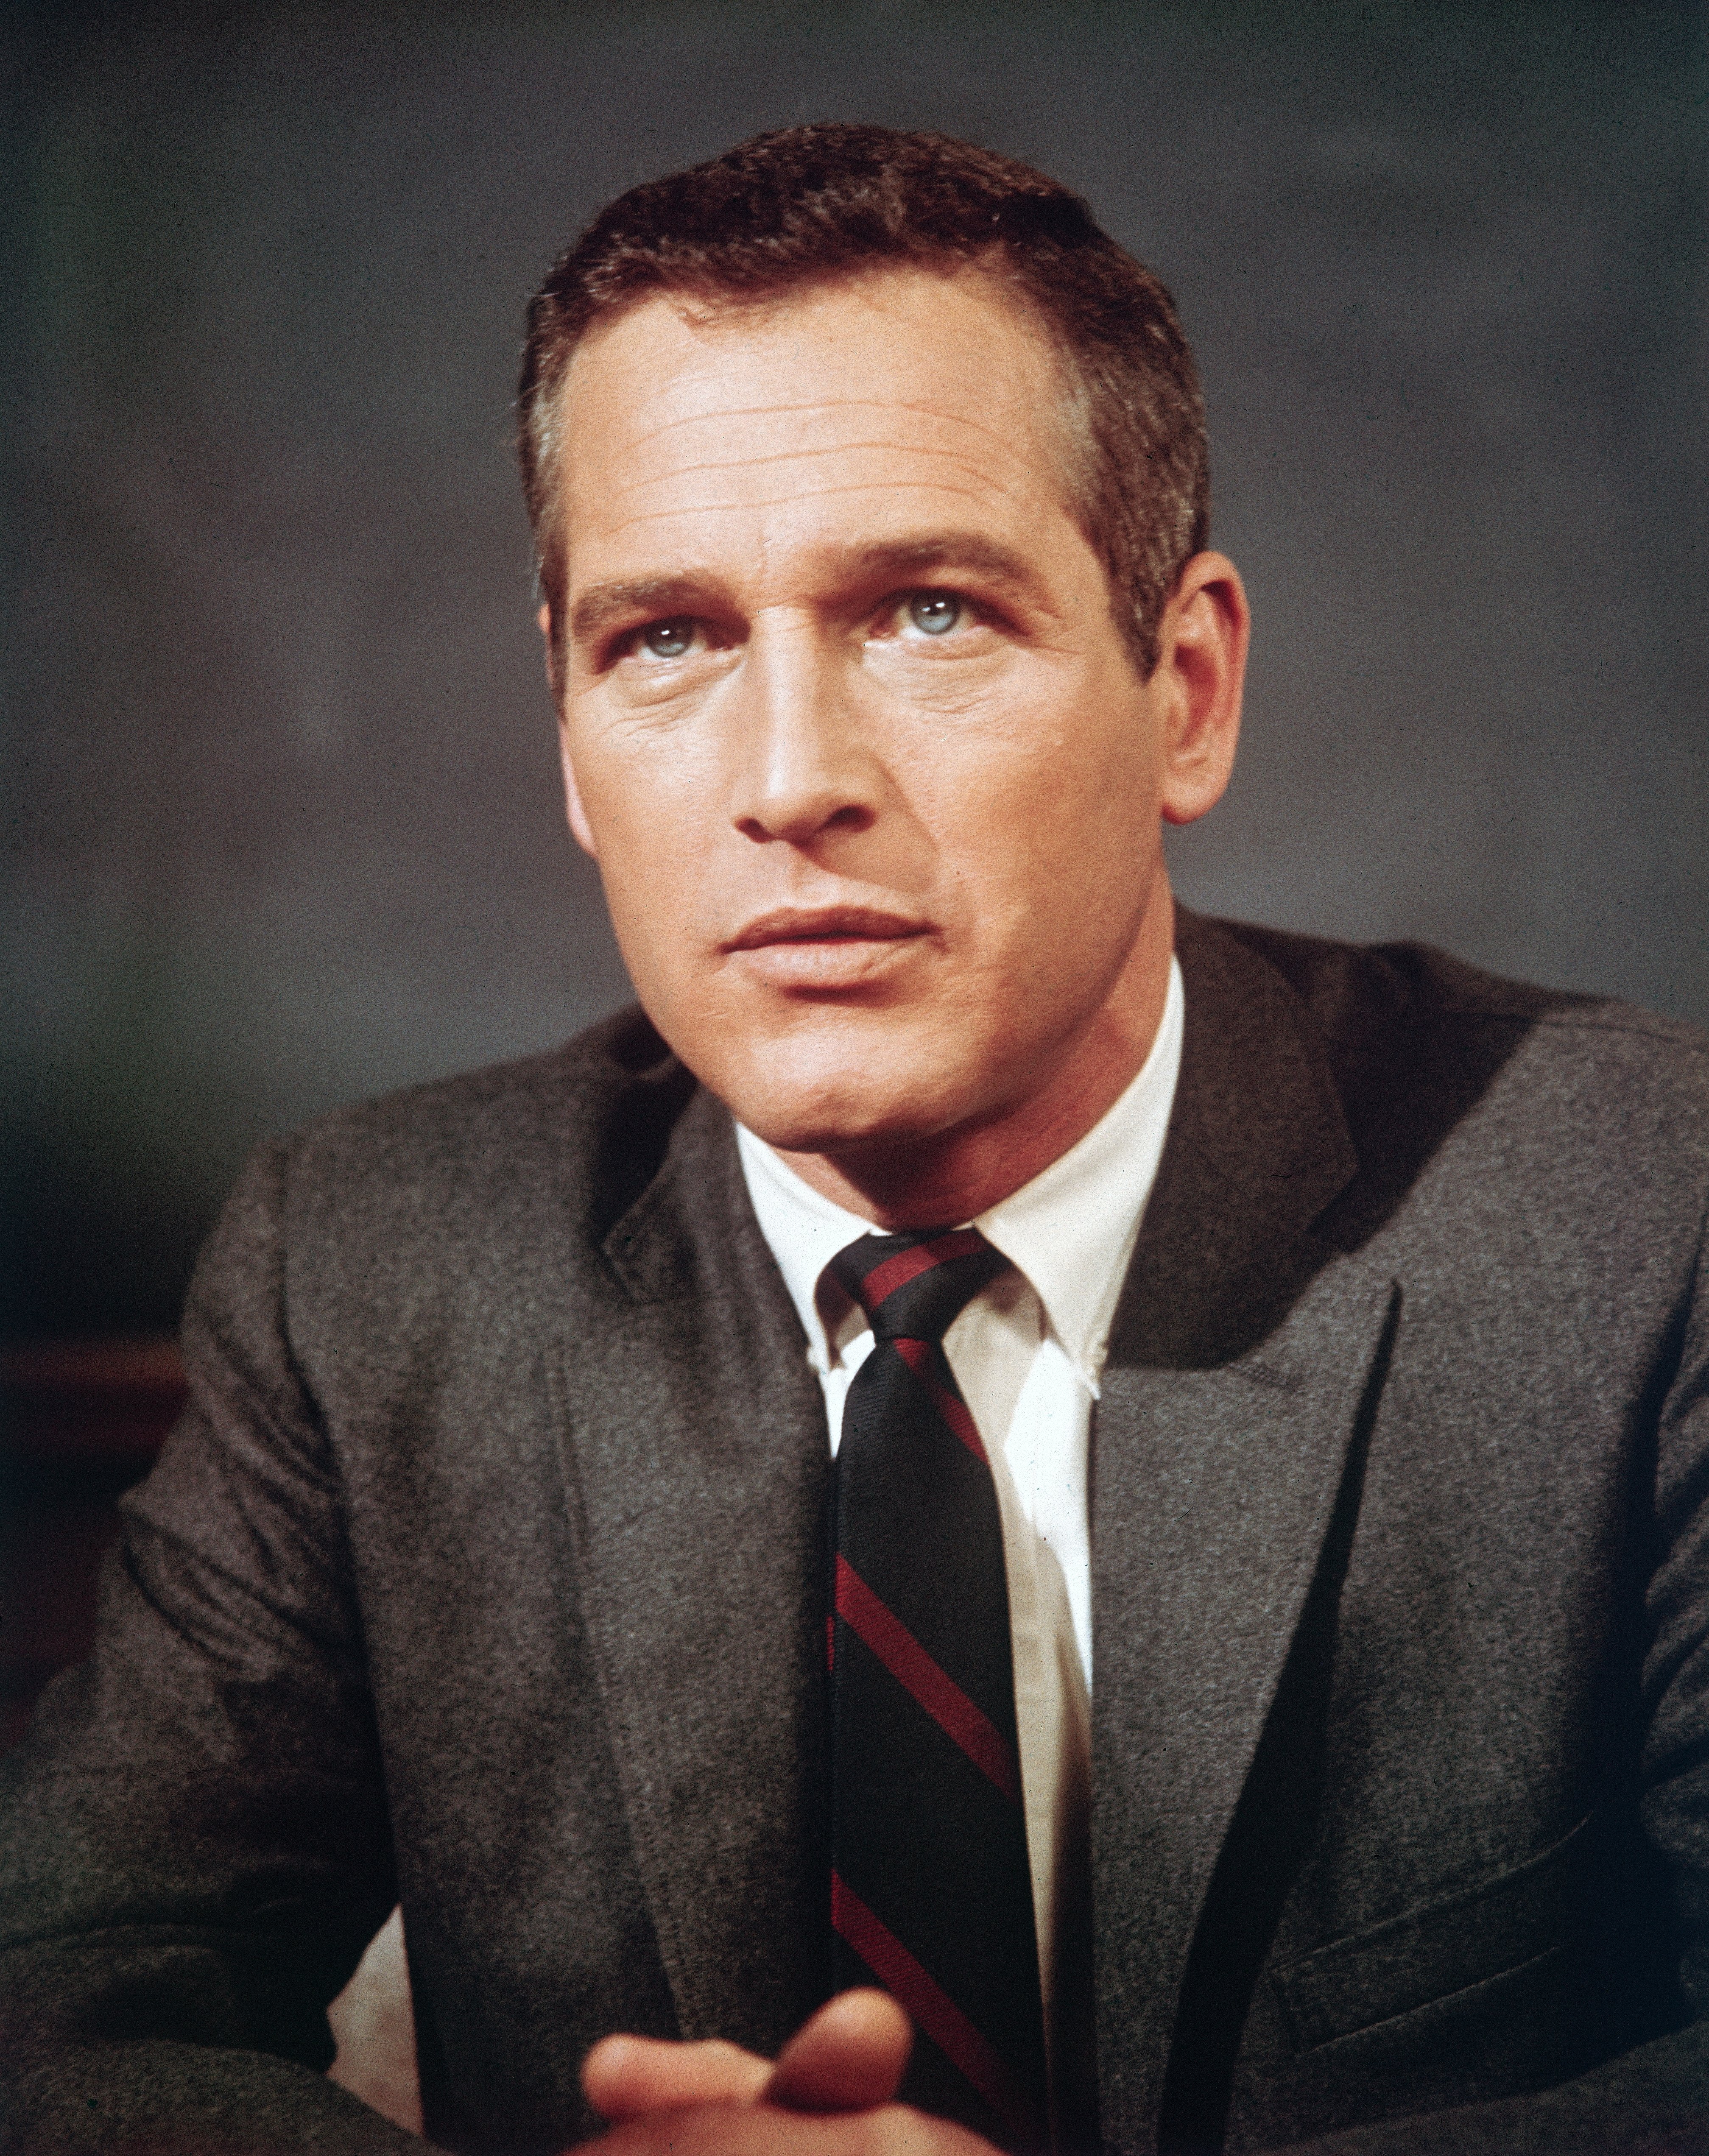 Im Bild: Paul Newman posiert 1965 mit Sakko und Krawatte | Quelle: Getty Images